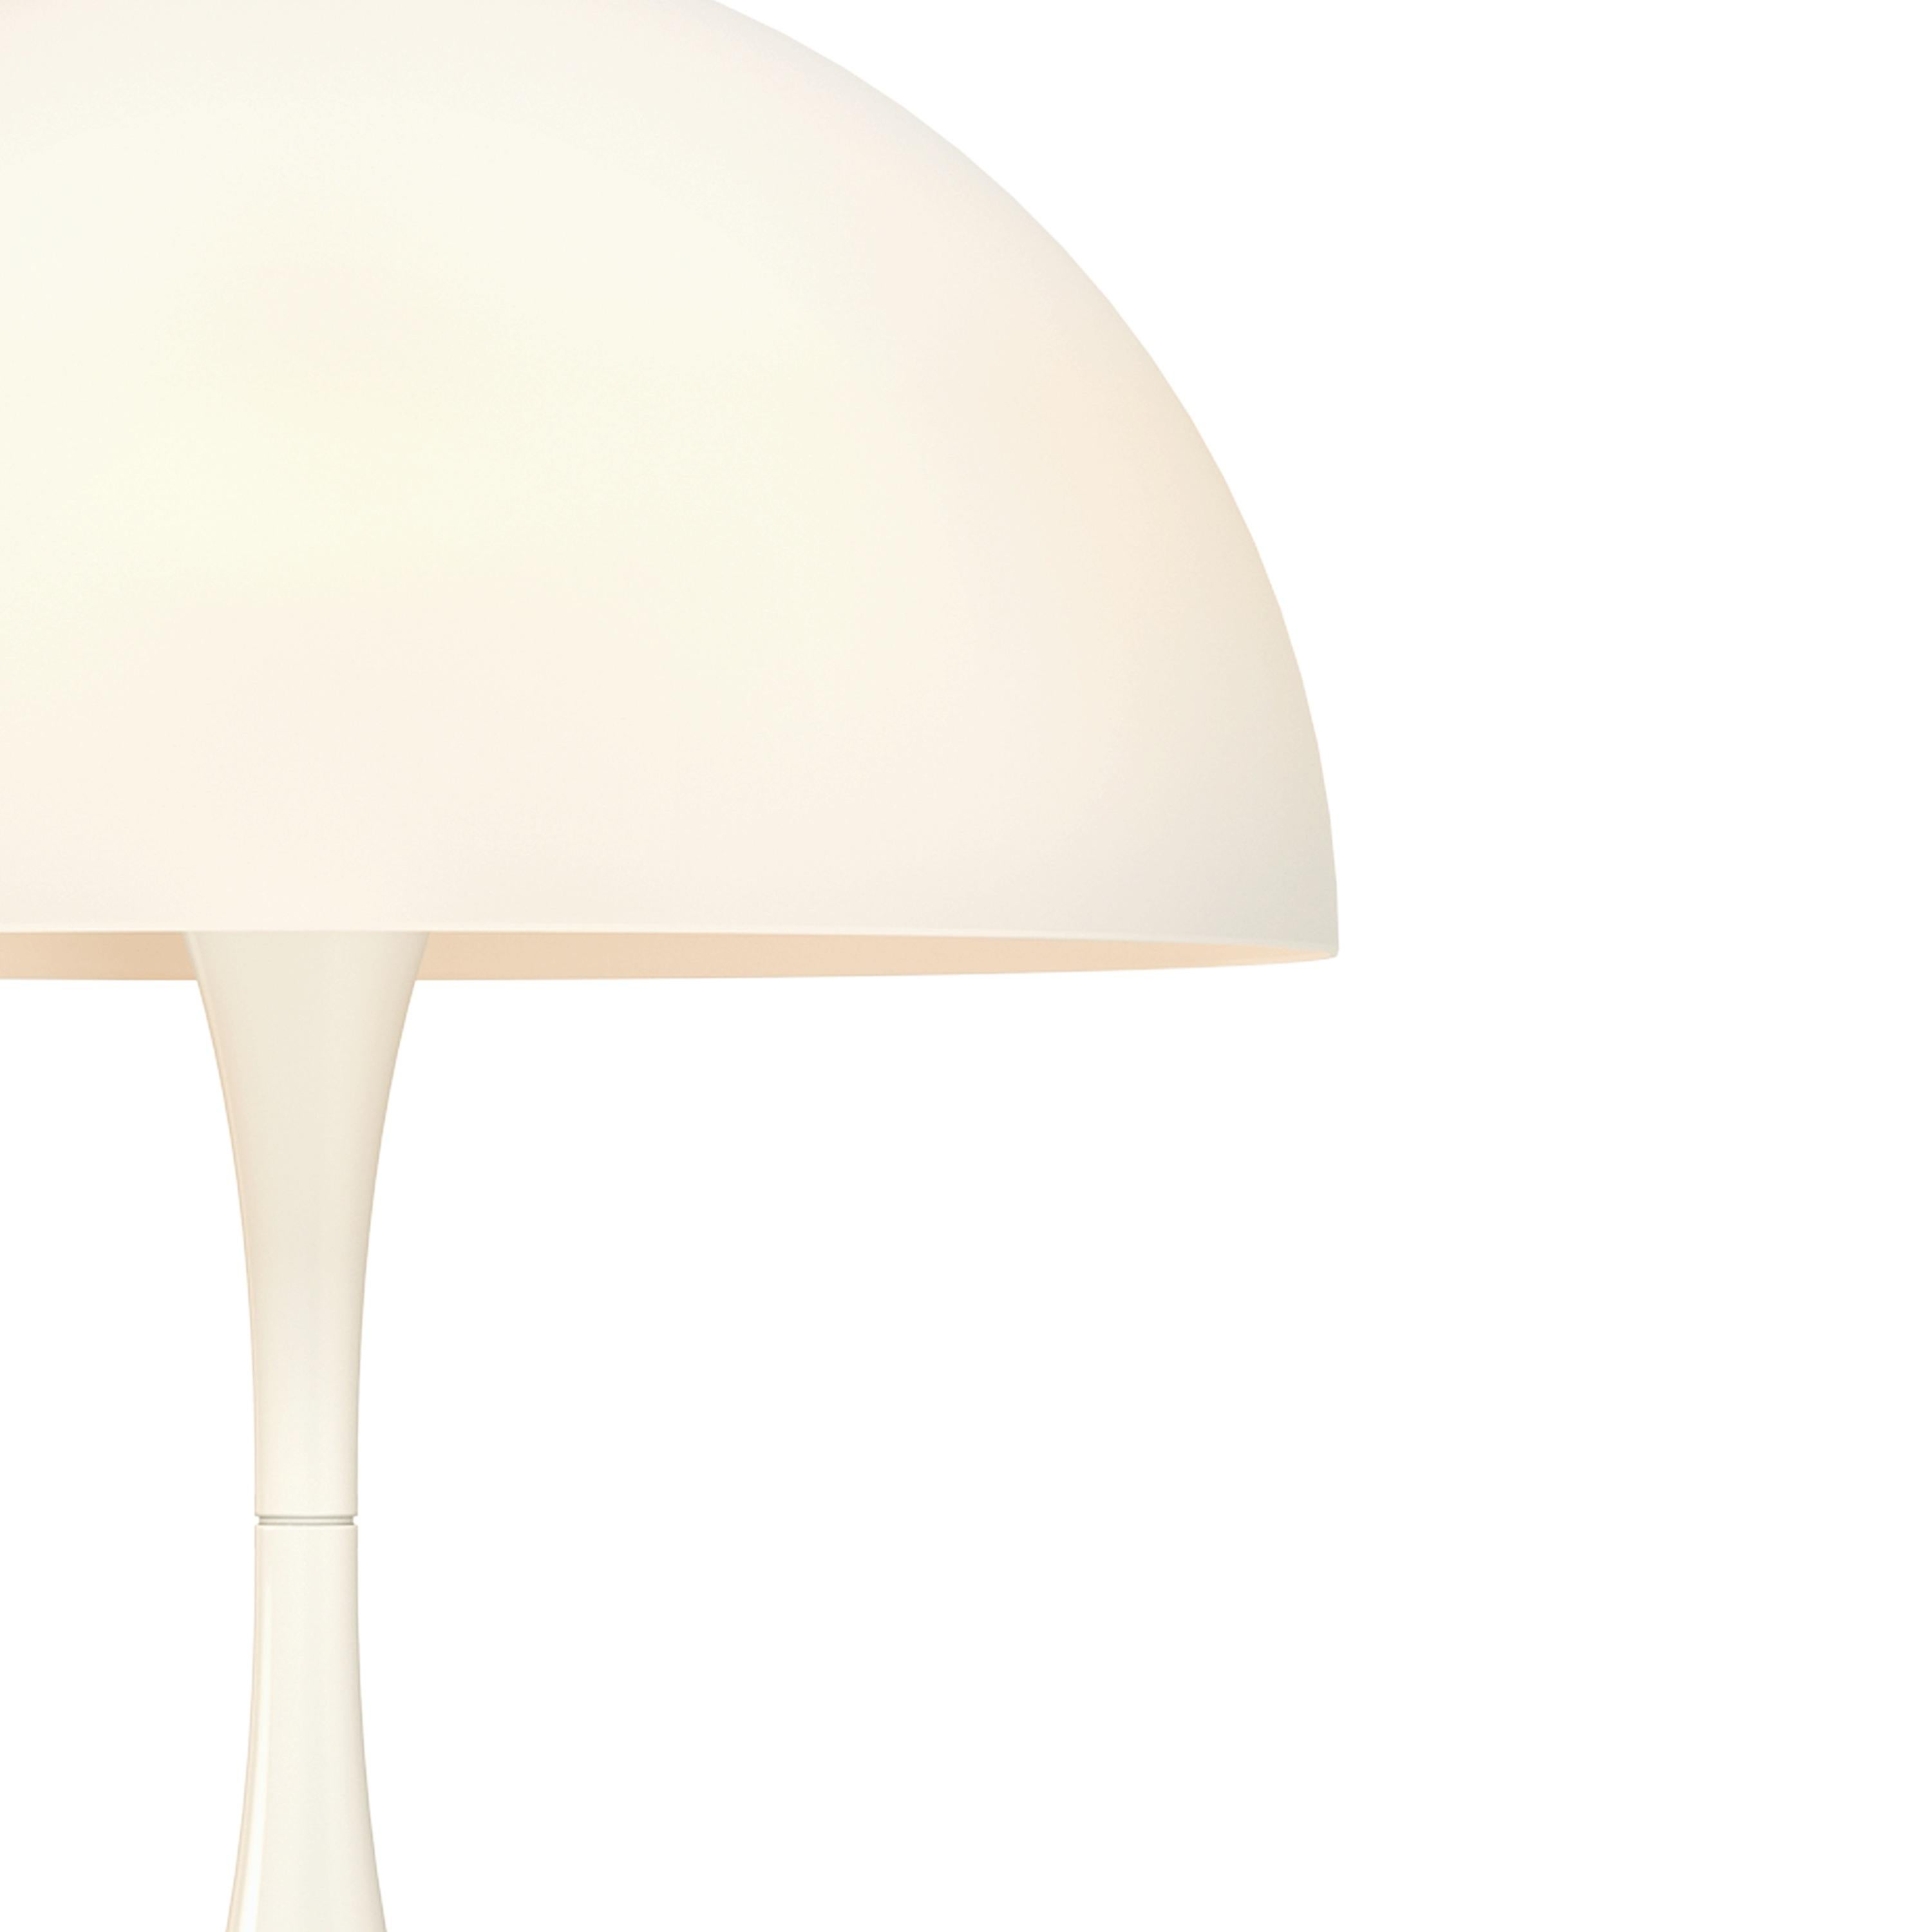 Verner Panton Panthella Mini lampe de table LED en opale blanc pour Louis Poulsen. Exécuté en acrylique blanc opale. La lampe de table Panthella mini LED utilise les dessins originaux de Verner Panton pour produire une lampe de forme organique avec